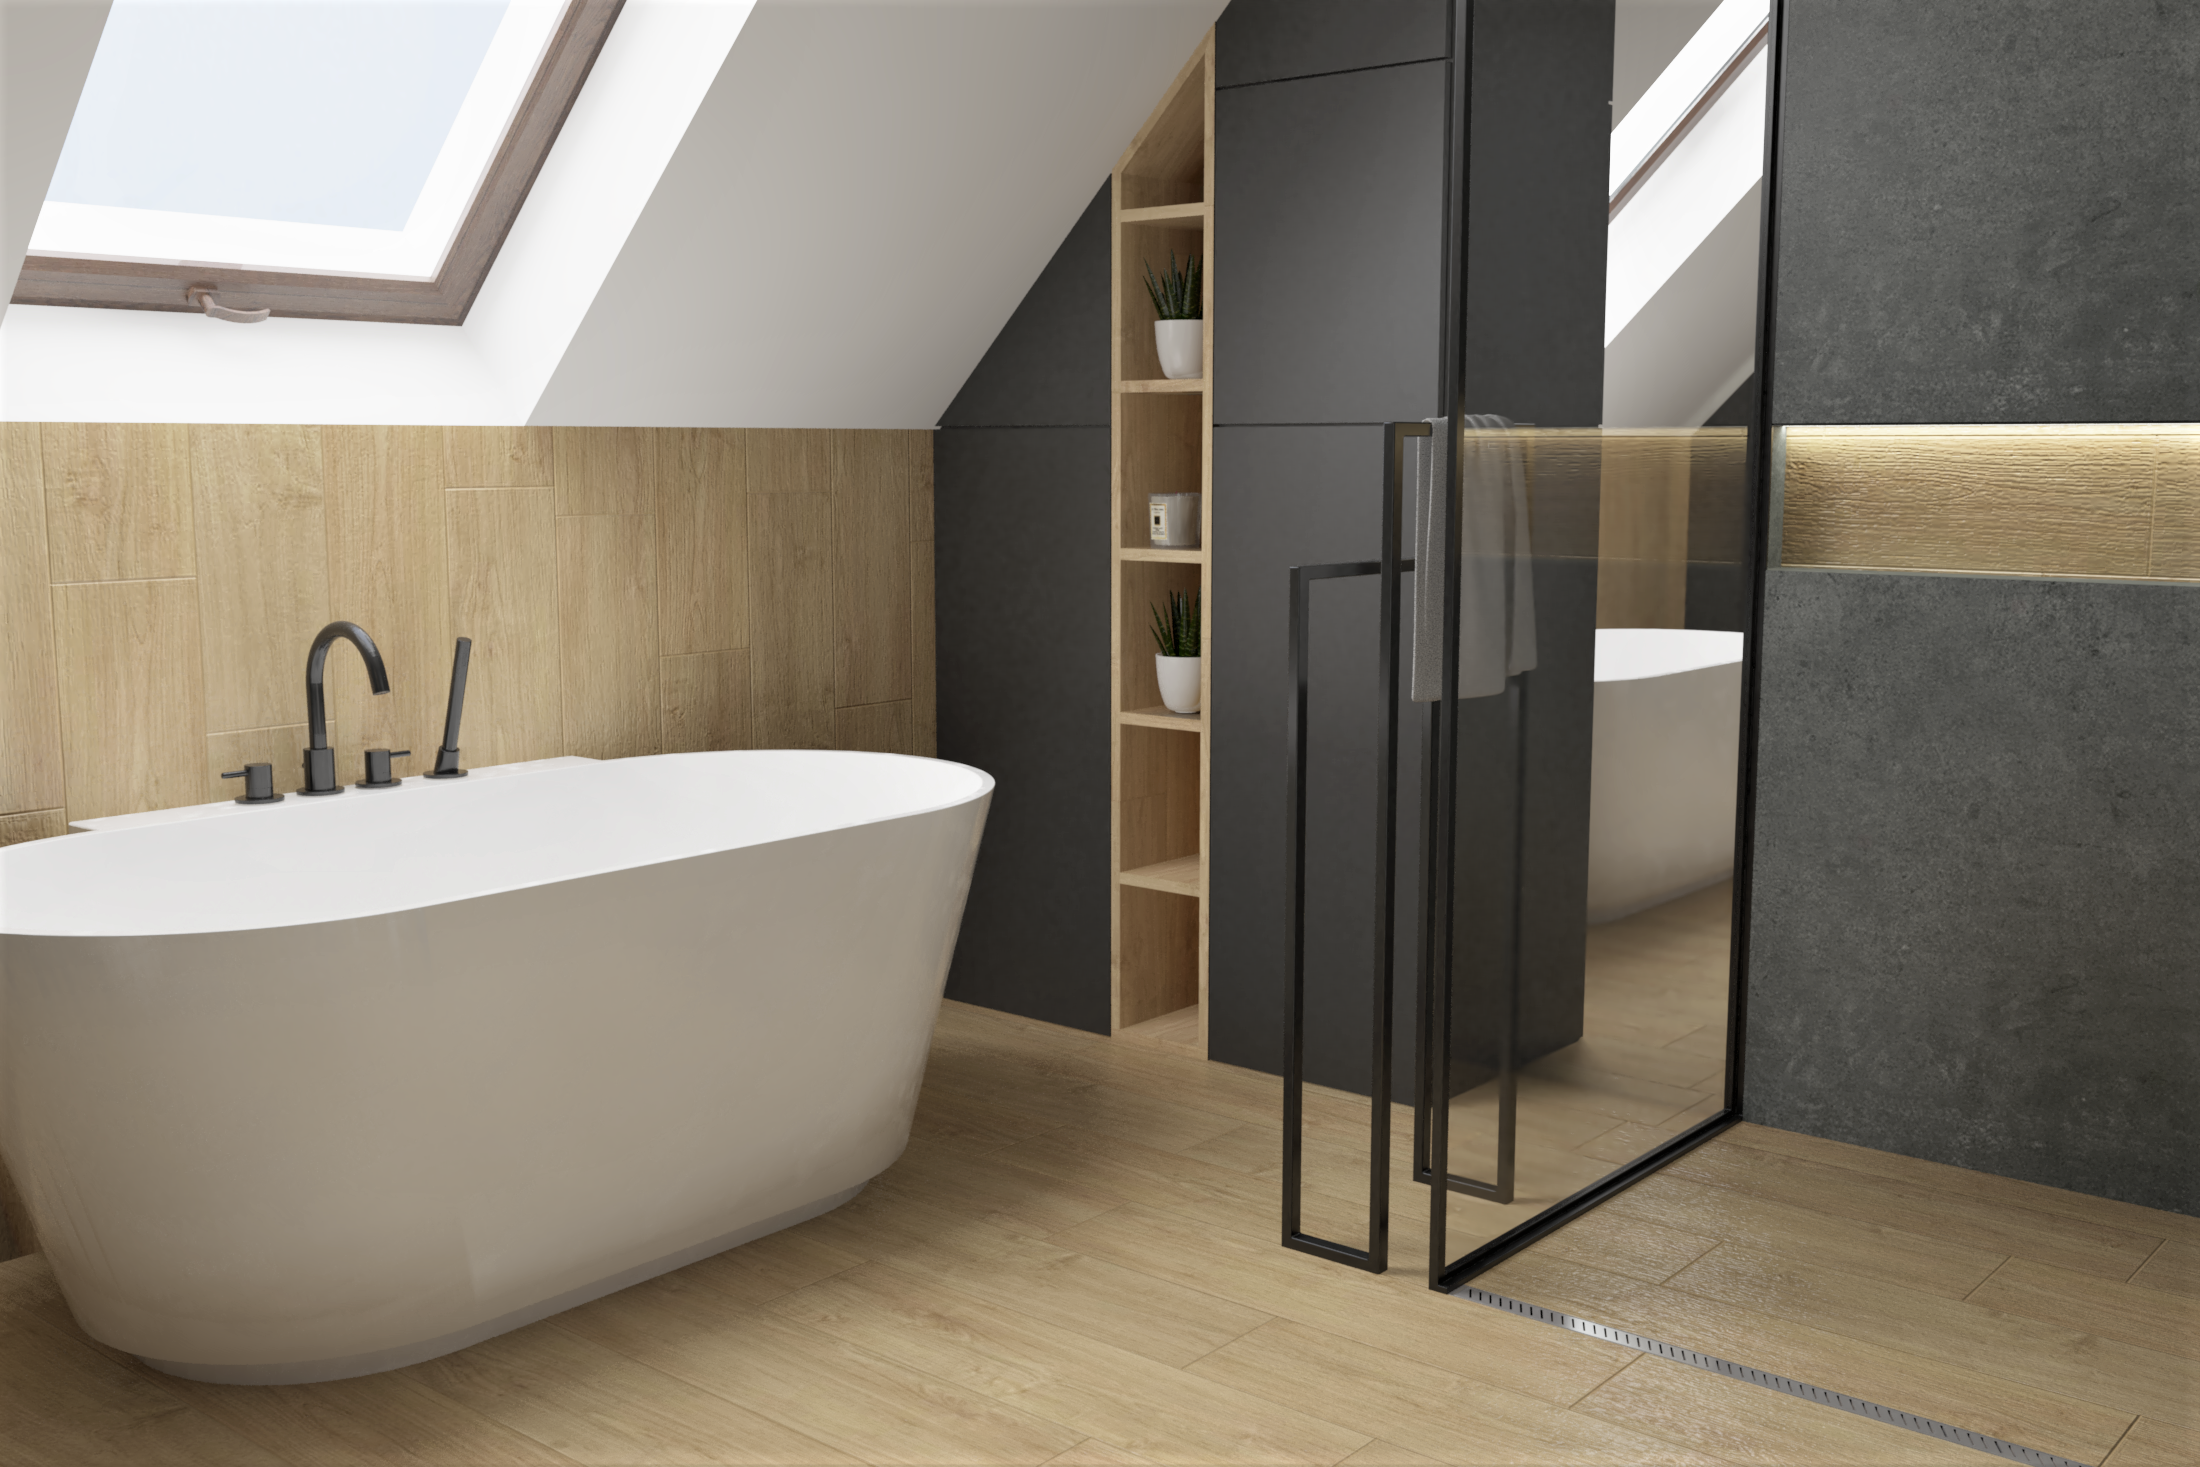 Projekt łazienki z prysznicem bez brodzika wykonany przez Studio Wizualizacje Wnętrz Sztejkowski. W prysznicu bez brodzika znajdziecie odpływ liniowy Rigo, Vogi.